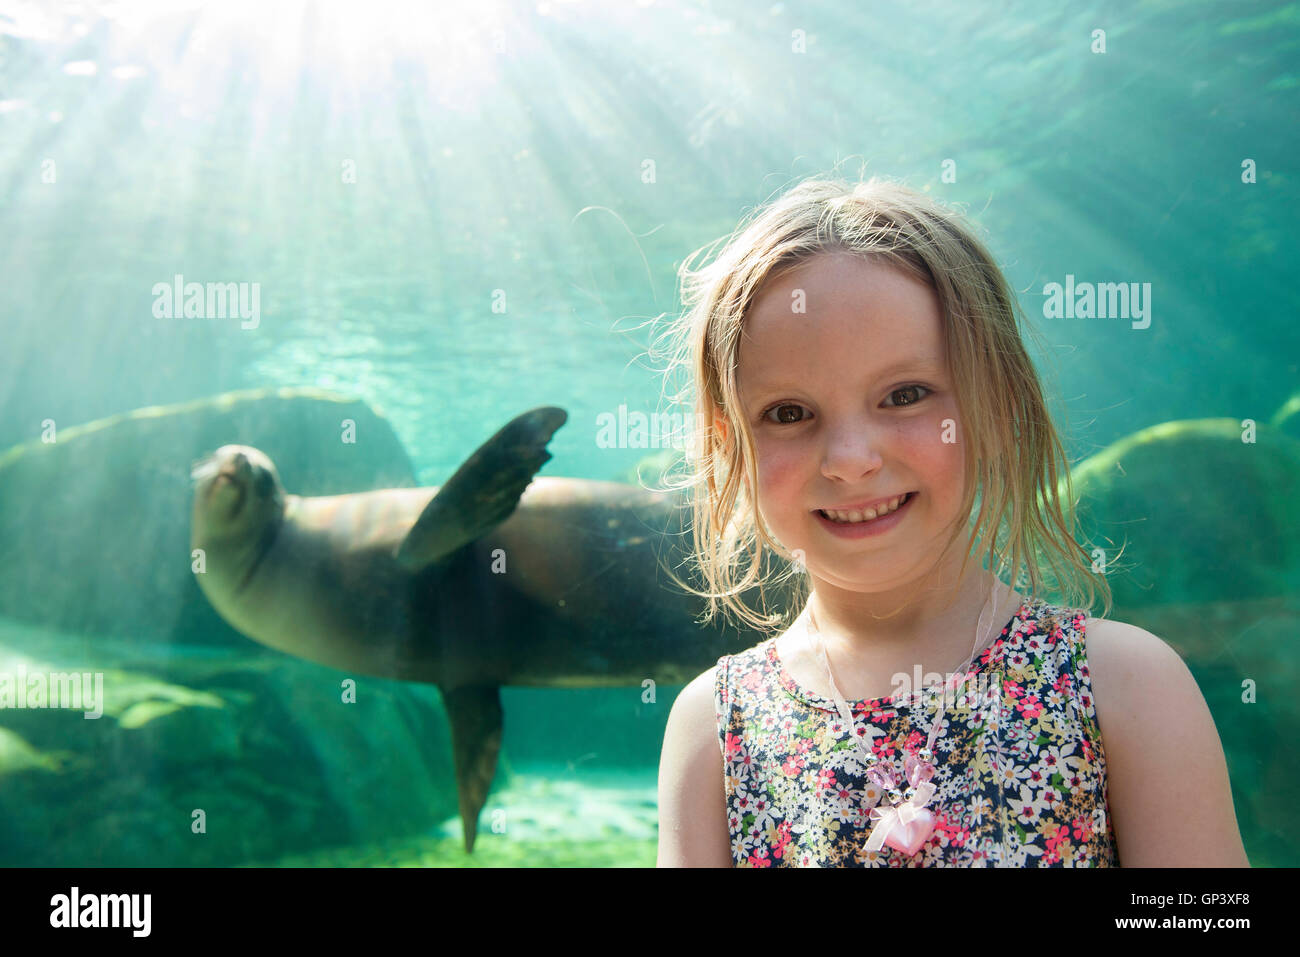 Little girl at aquarium, portrait Stock Photo